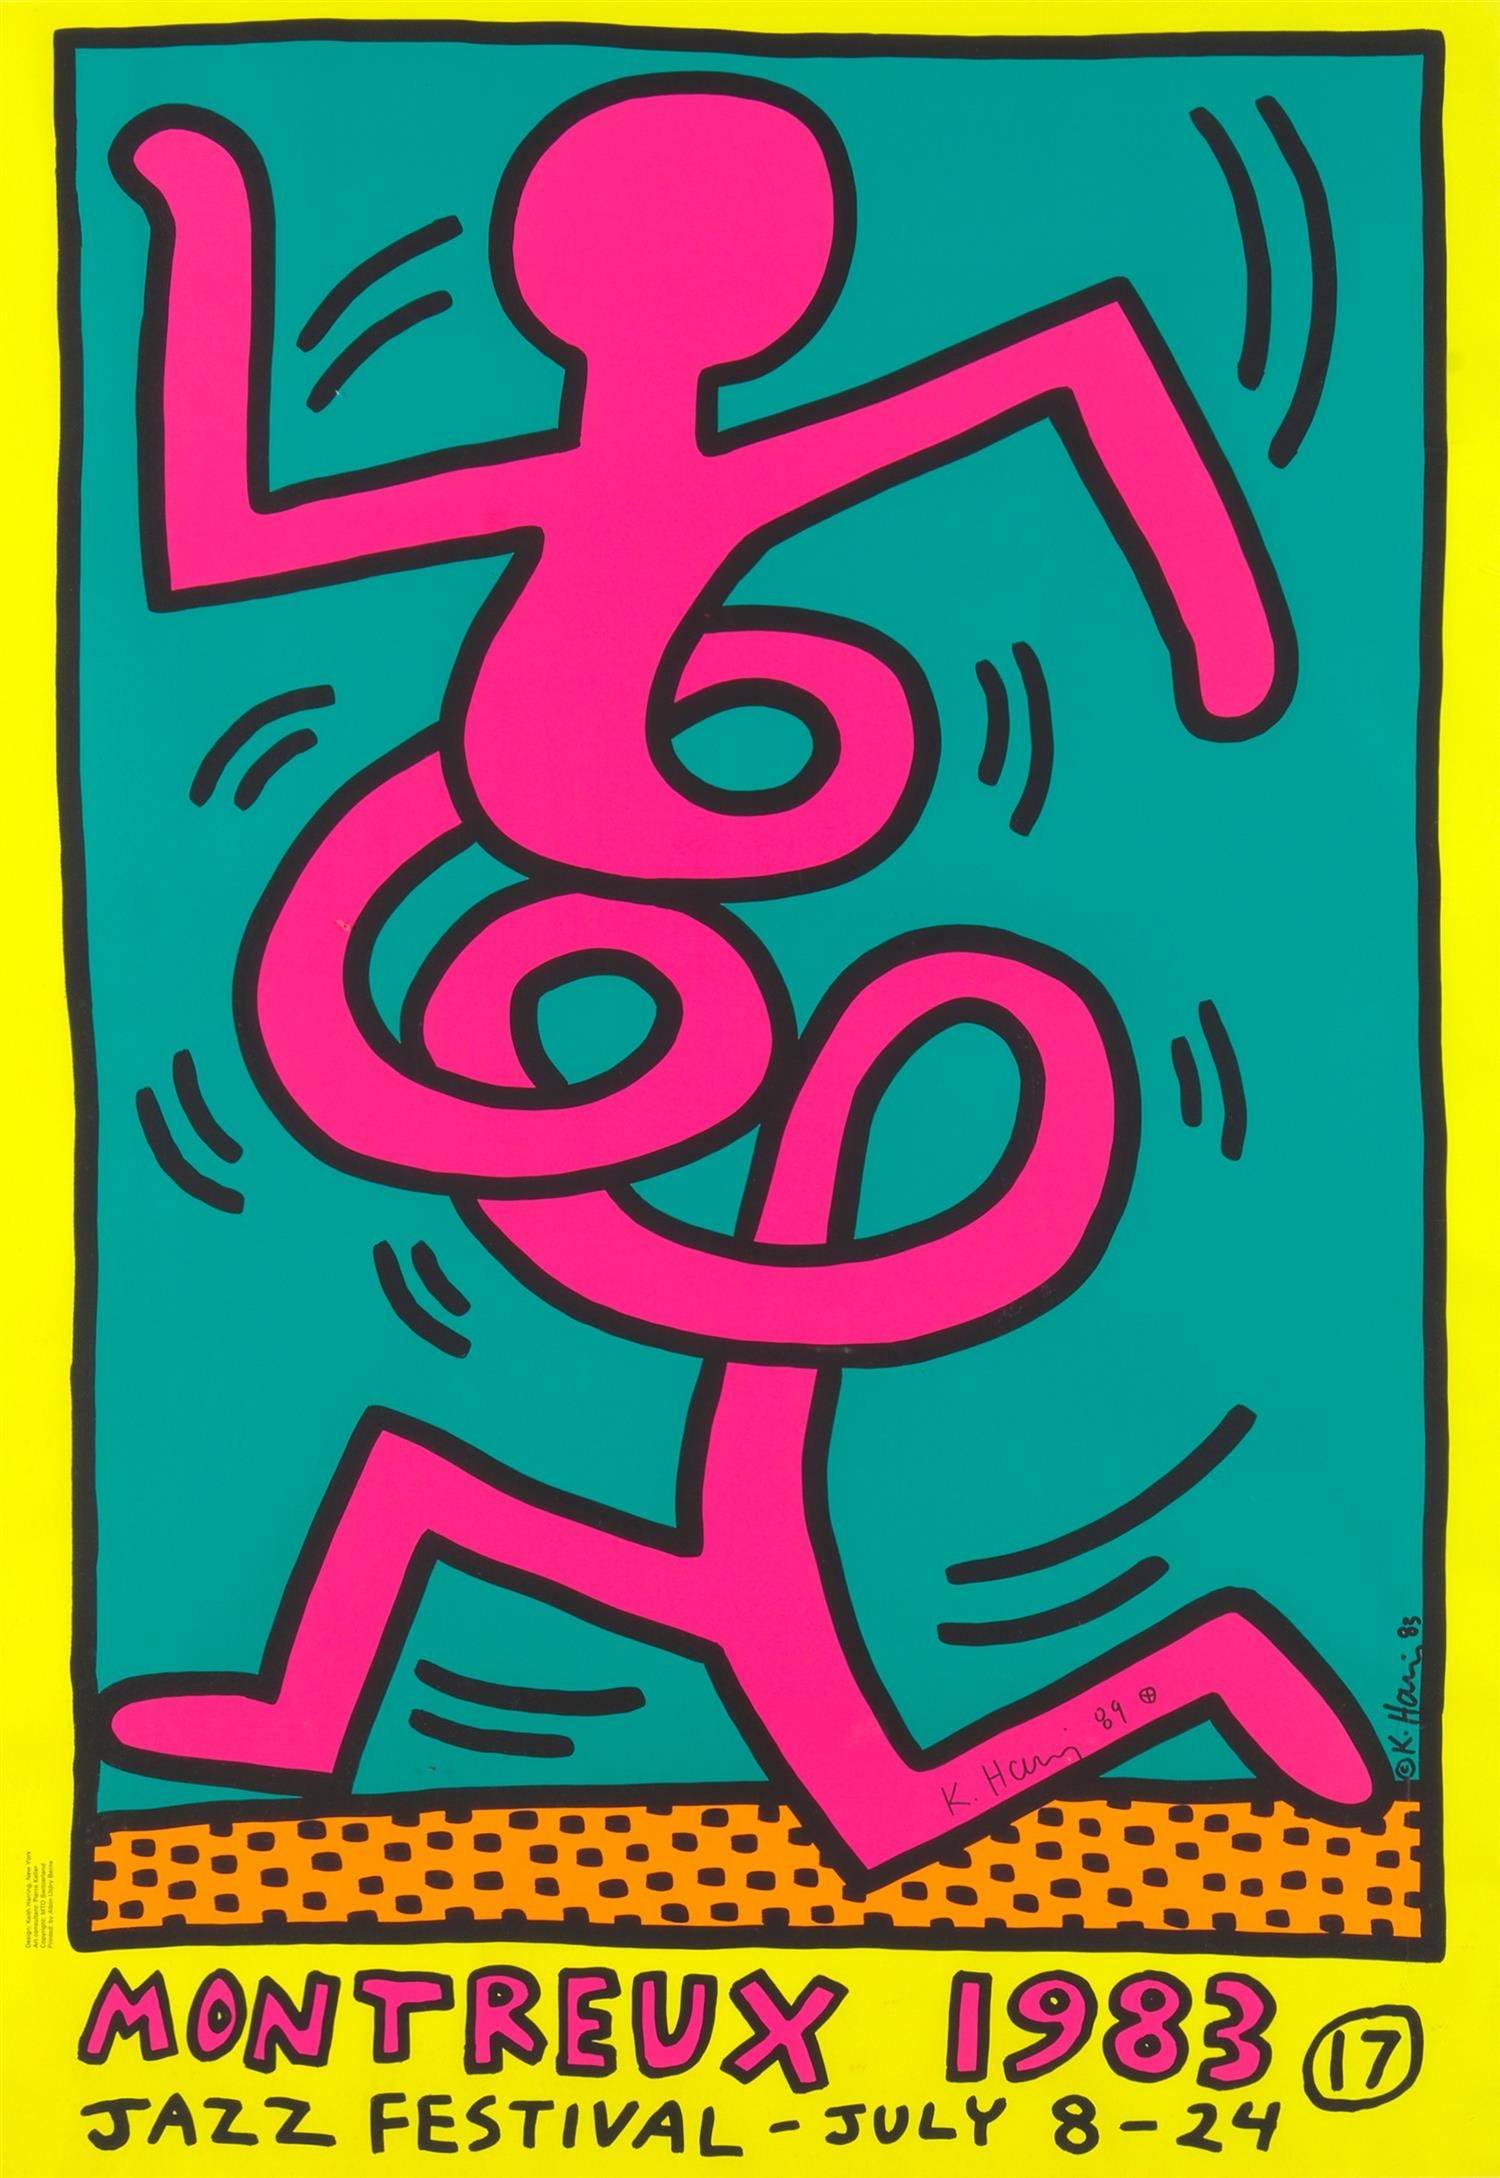 Pop Shop III Scissors by Keith Haring - Guy Hepner